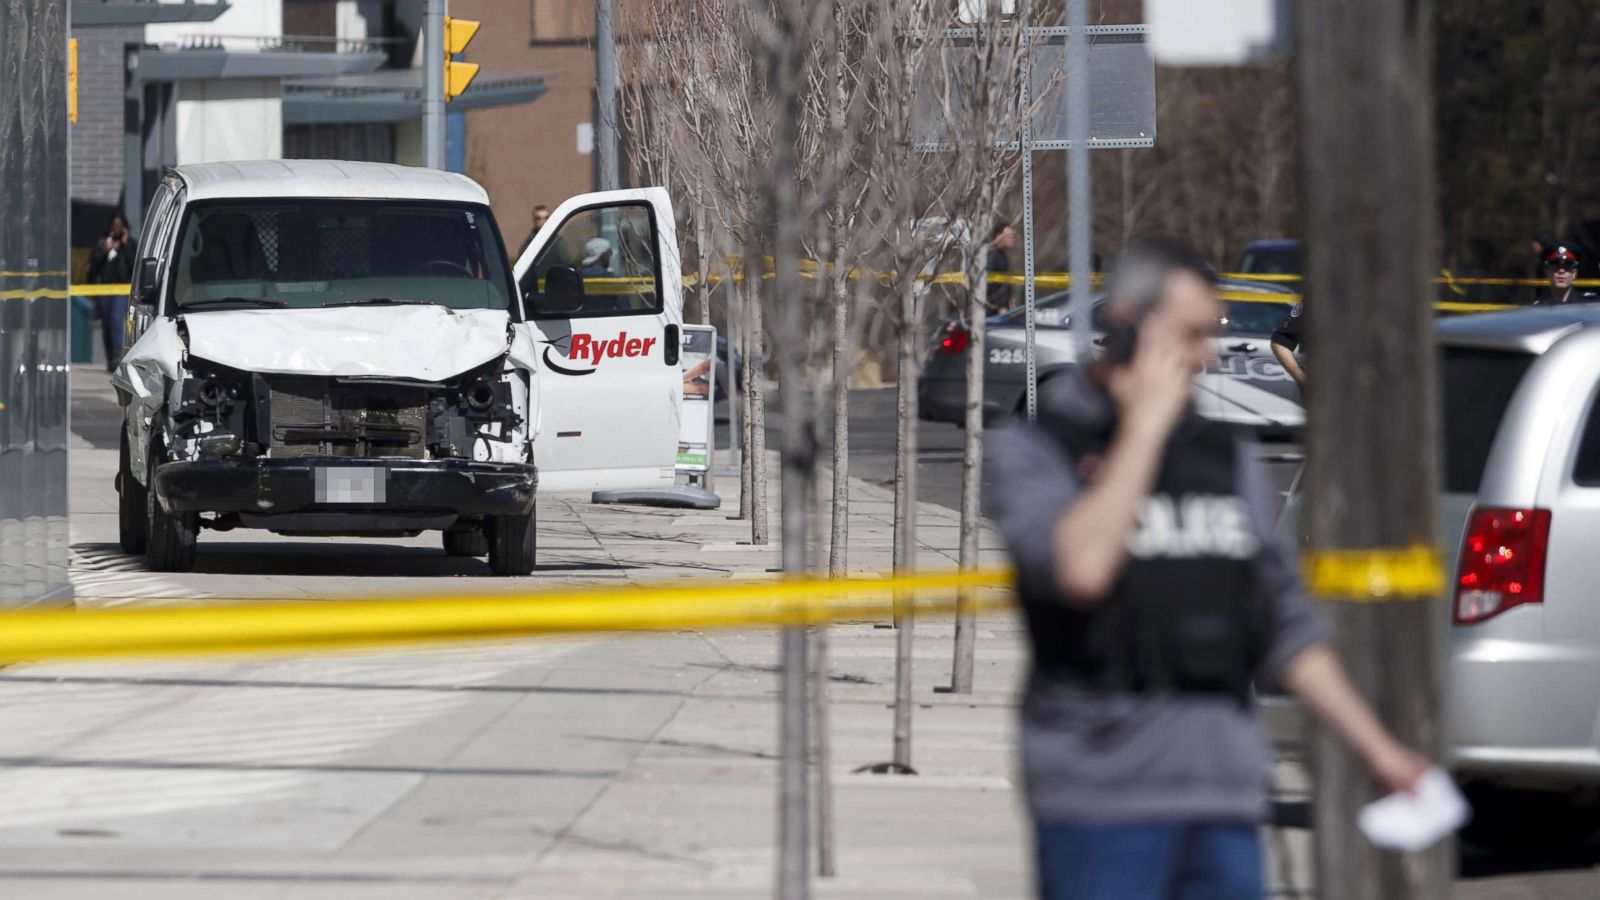 Suspect in deadly Toronto van attack 